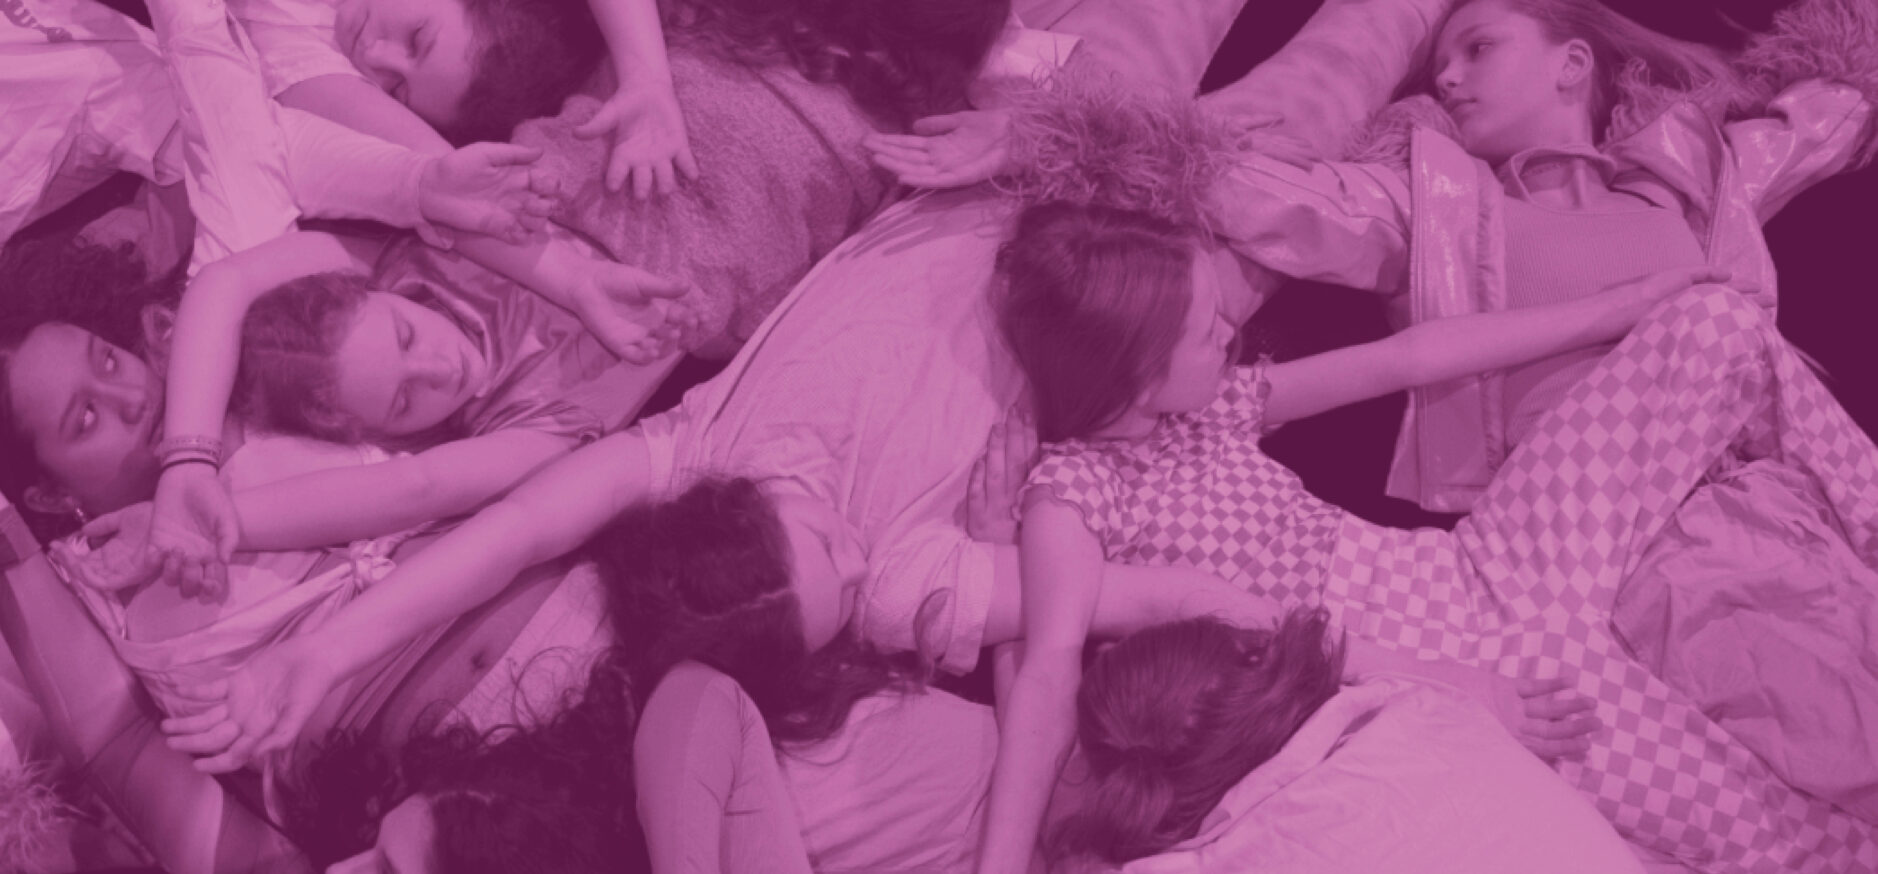 Symbolbild: Mädchen liegen auf dem Boden, Arme und Hände überkreuzen sich